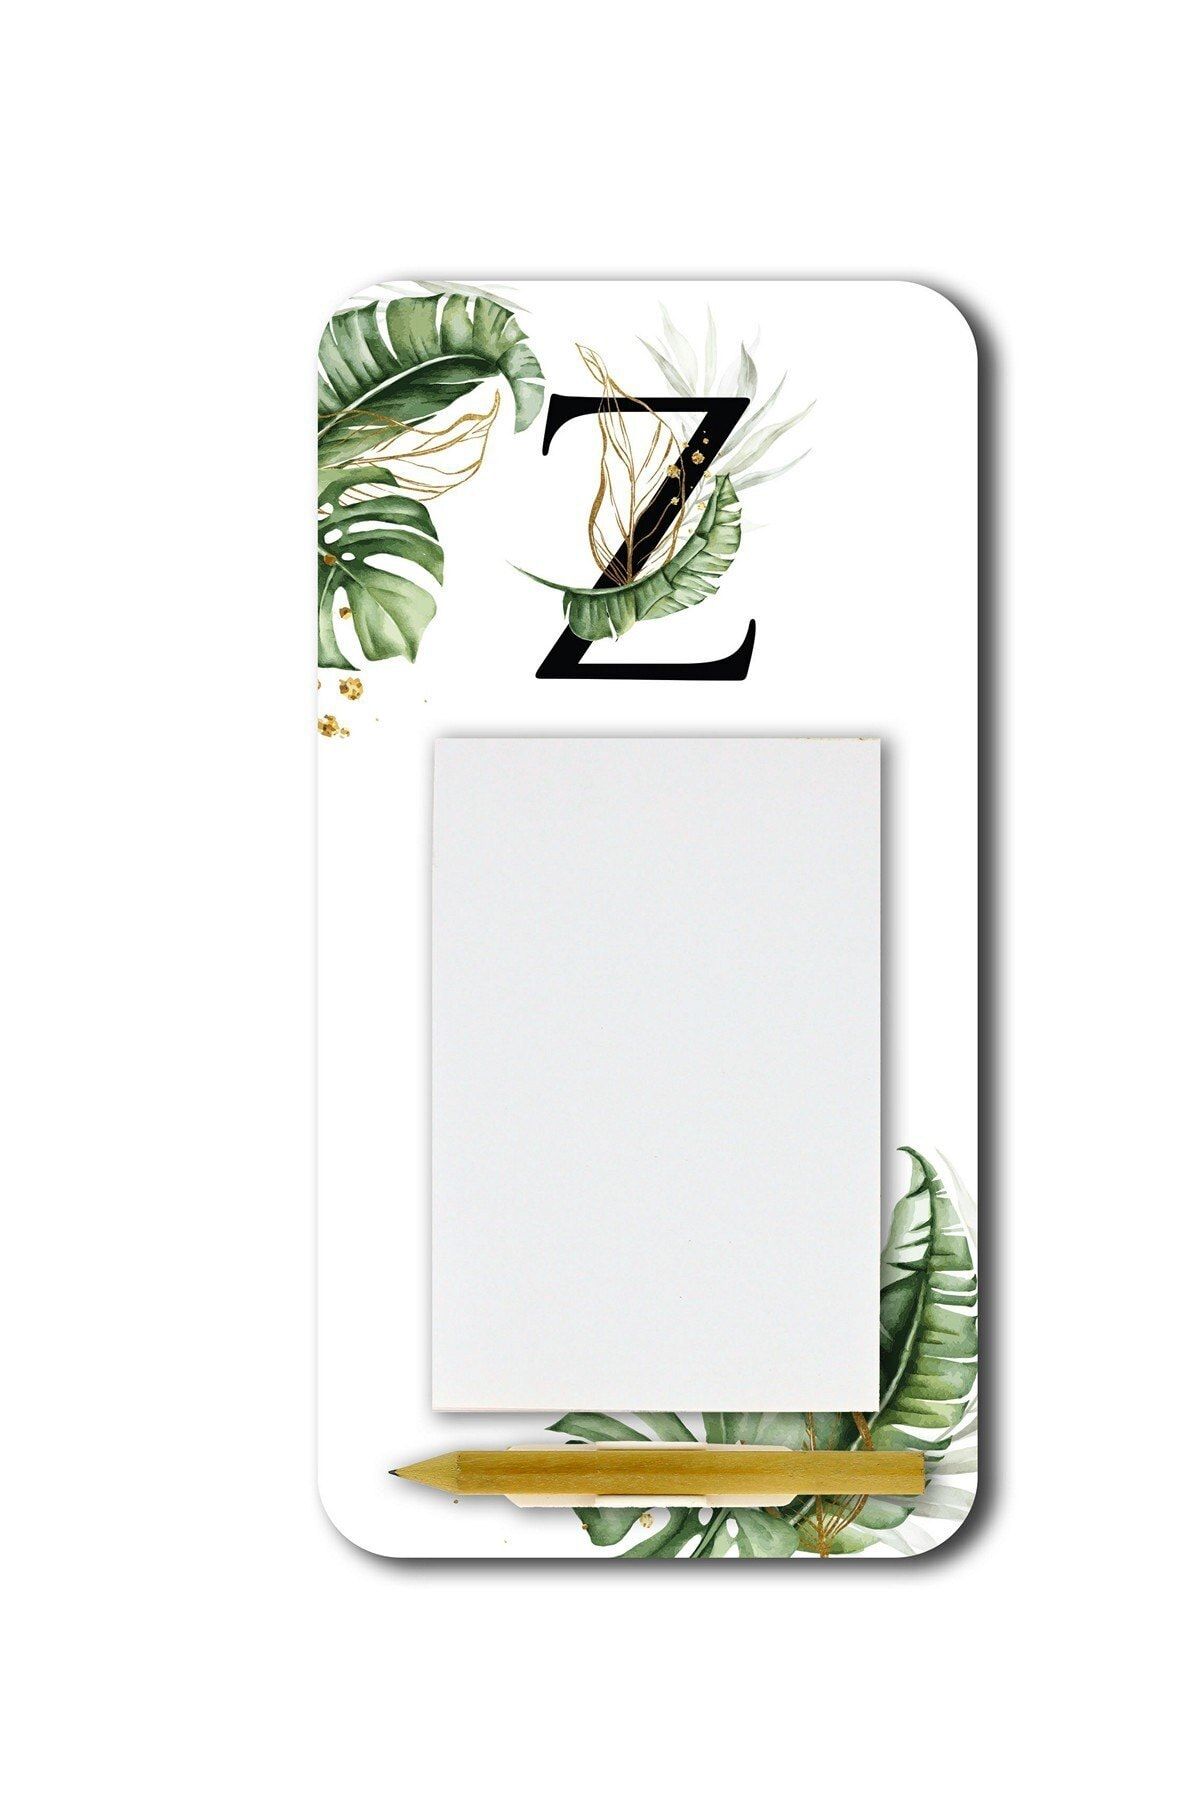 WuW Tropik Desenli Z Harfli Magnetli Kalemli Notluk Buzdolabı Magneti